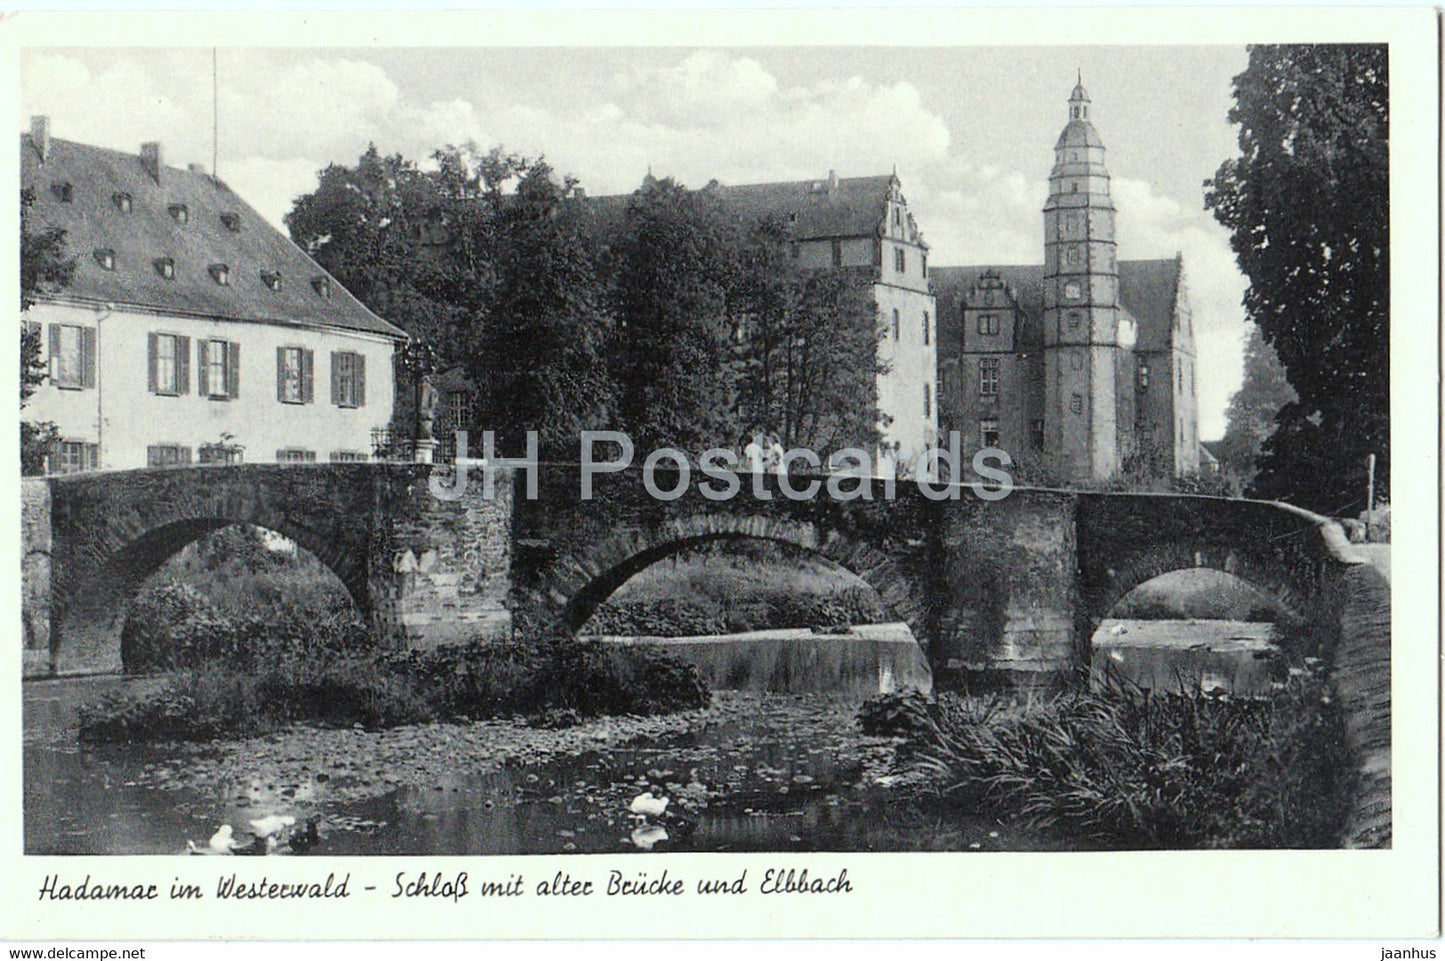 Hadamar im Westerwald - Schloss mit alter Brucke und Elbbach - bridge - 1959 - Germany - unused - JH Postcards